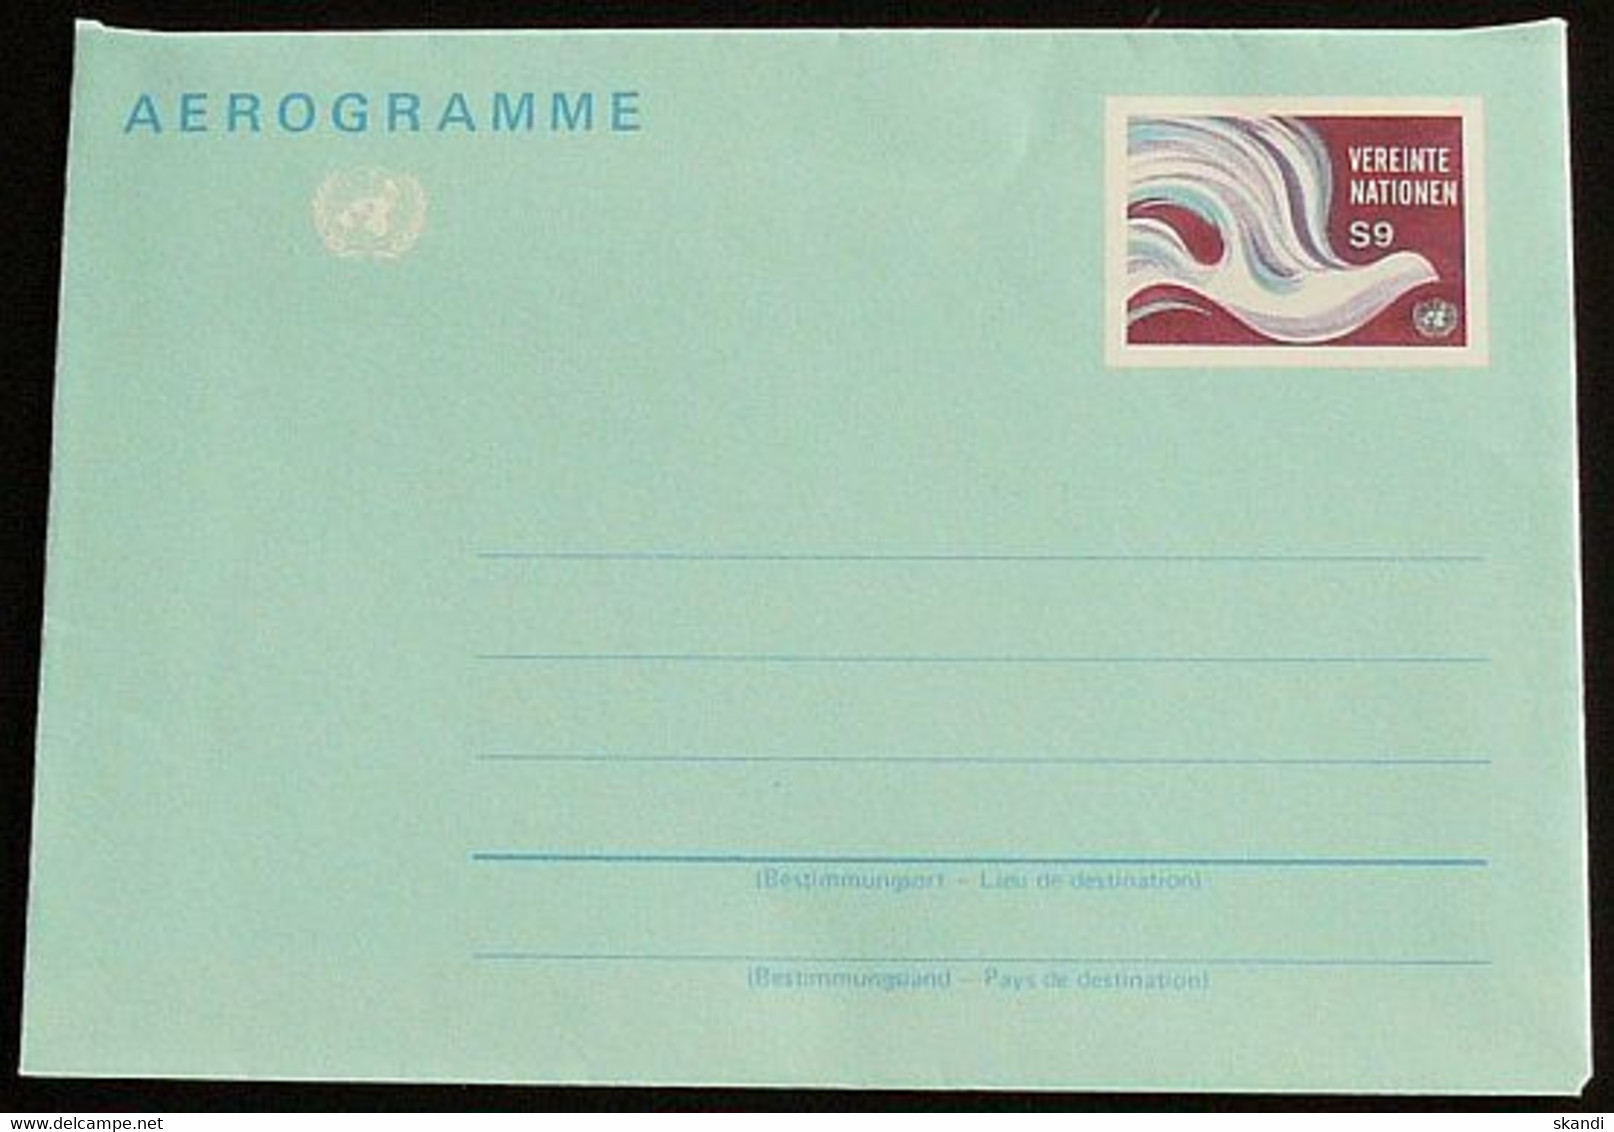 UNO WIEN 1994 Mi-Nr. LF 1 Luftpostfaltbrief Aerogramme Ungebraucht - Lettres & Documents